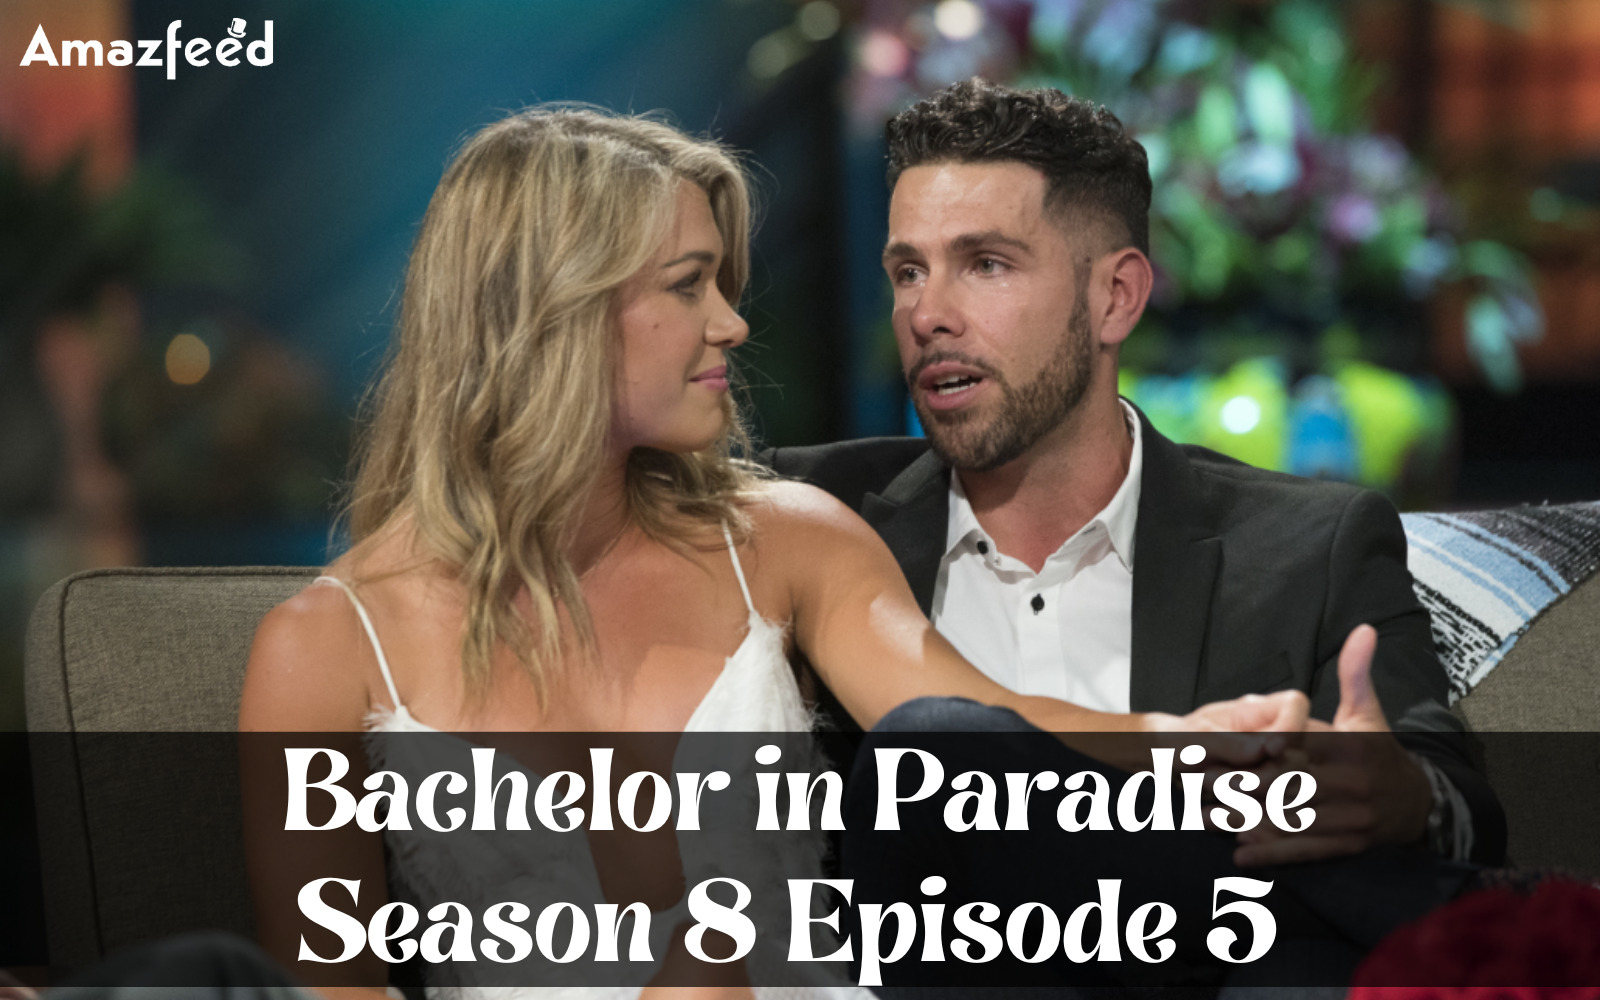 Bachelor in Paradise Season 8 Episode 4 Recap